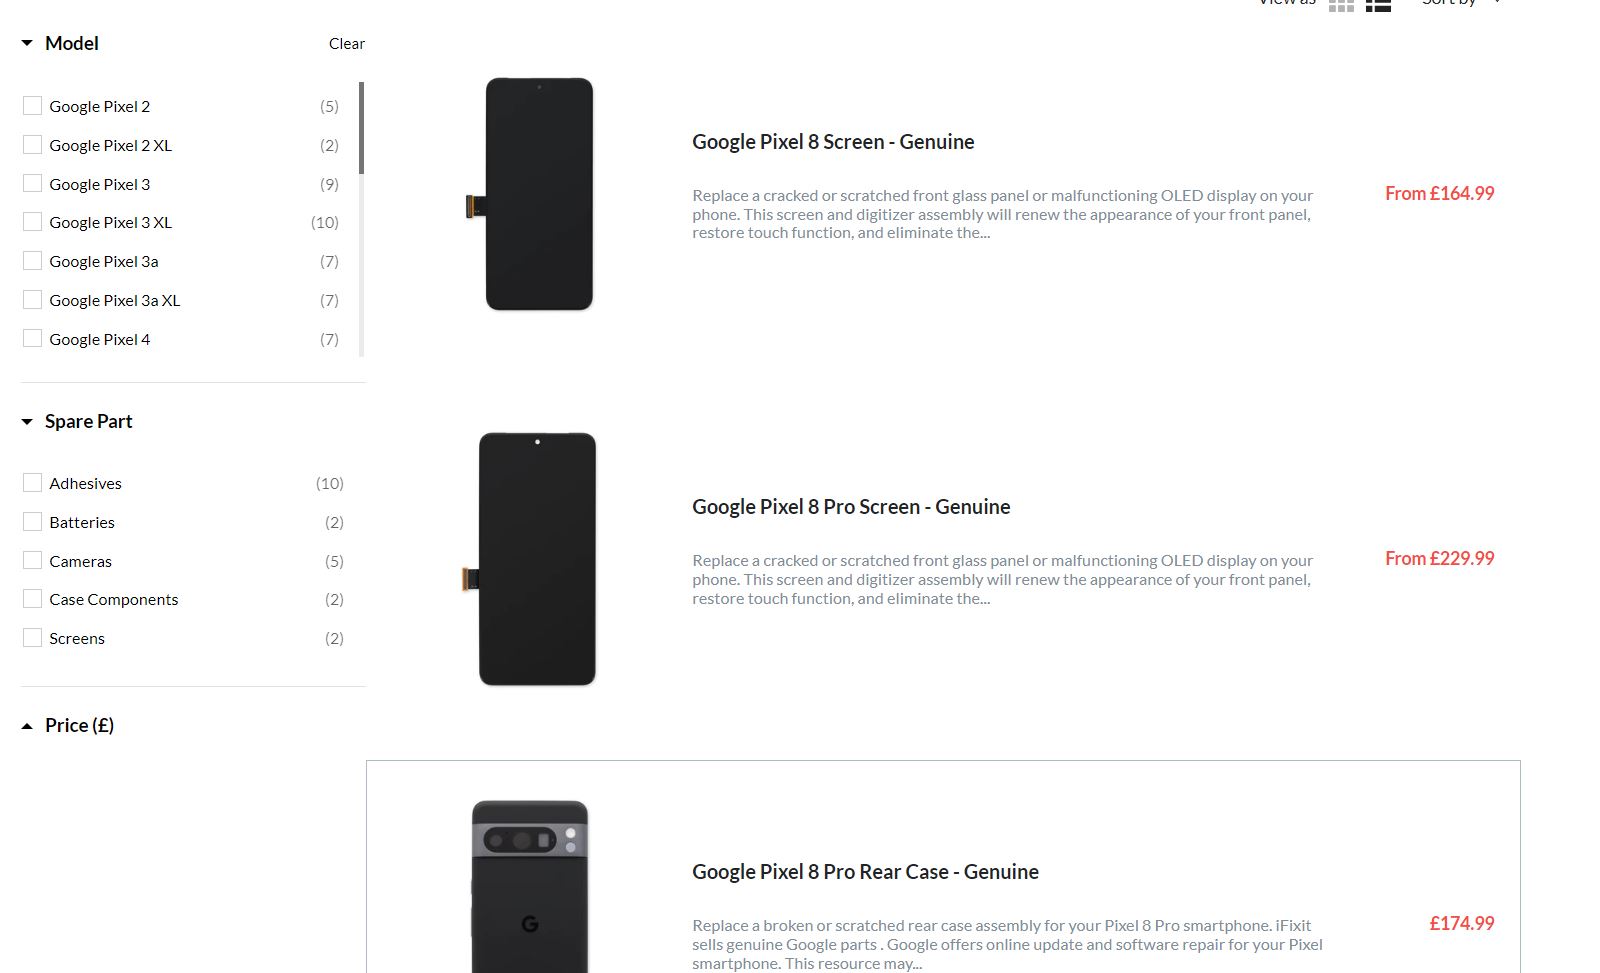 اجزای گوشی های سری پیکسل 8 گوگل از وب سایت iFixit